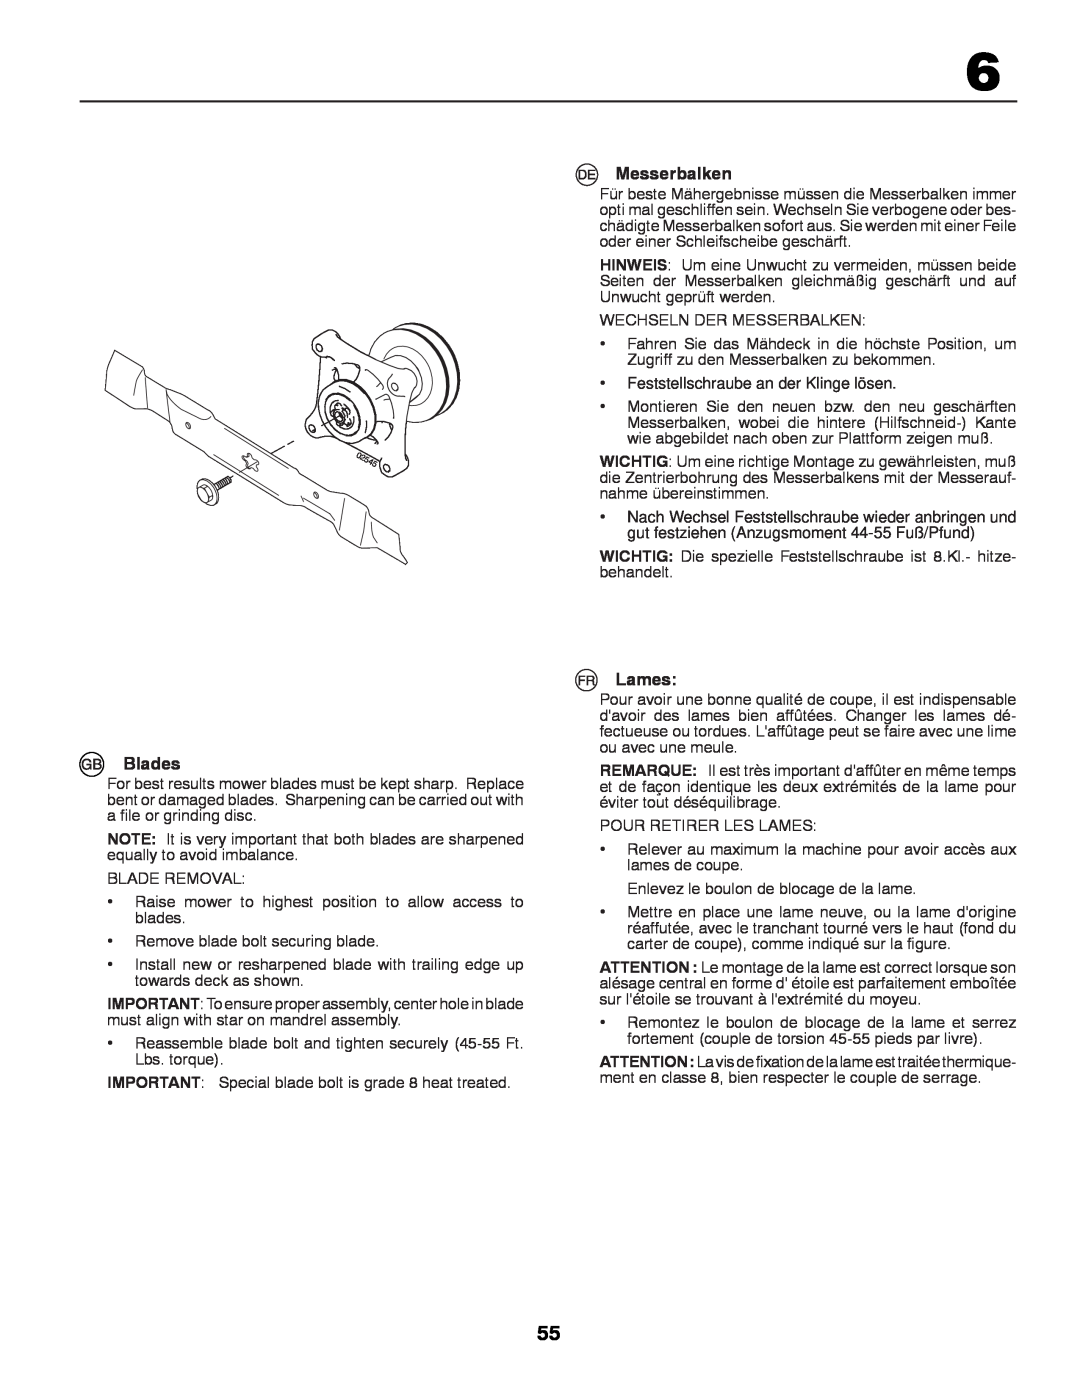 McCulloch 96041000901, M13597H instruction manual Blades, Messerbalken, Lames, Feststellschraube an der Klinge lösen 